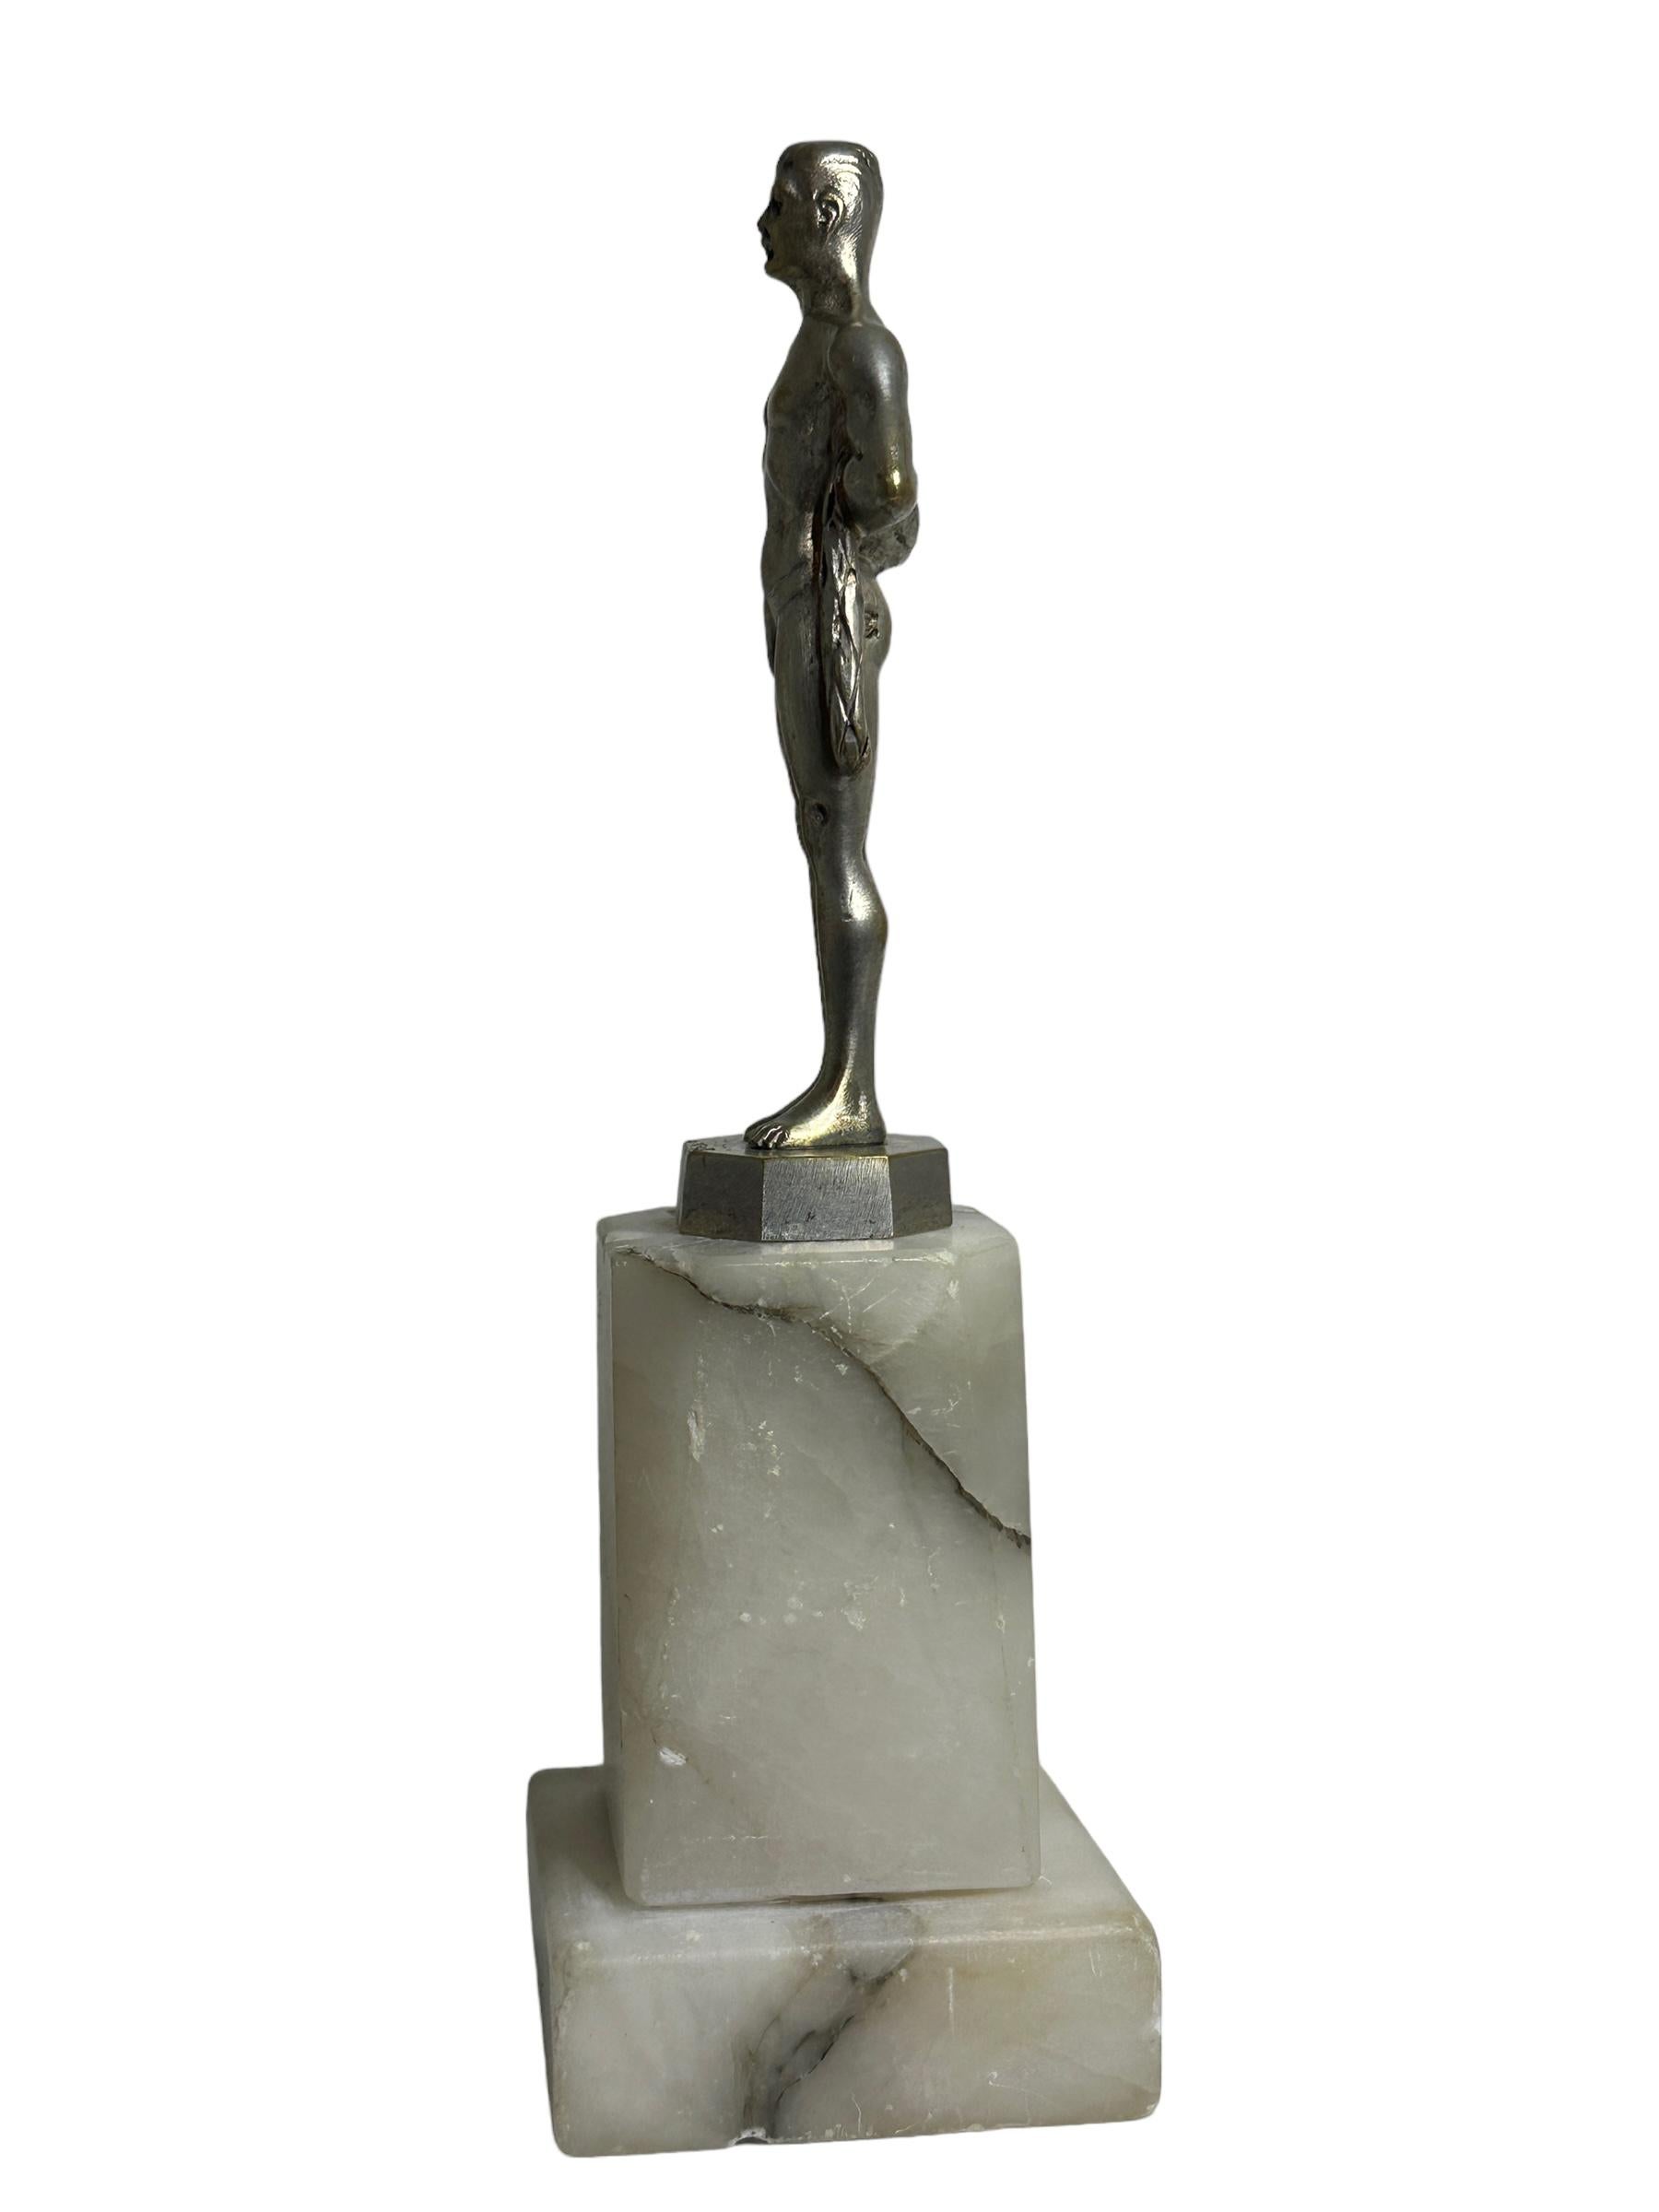 Eine klassische, sehr dekorative Bronzestatue des Bildhauers C. BREHMER, die einen männlichen Sportler in traditioneller, modischer Sportkleidung dieser Zeit in ausgezeichneter, naturalistischer Pose darstellt. Die Bronzeskulptur ist vom Künstler C.